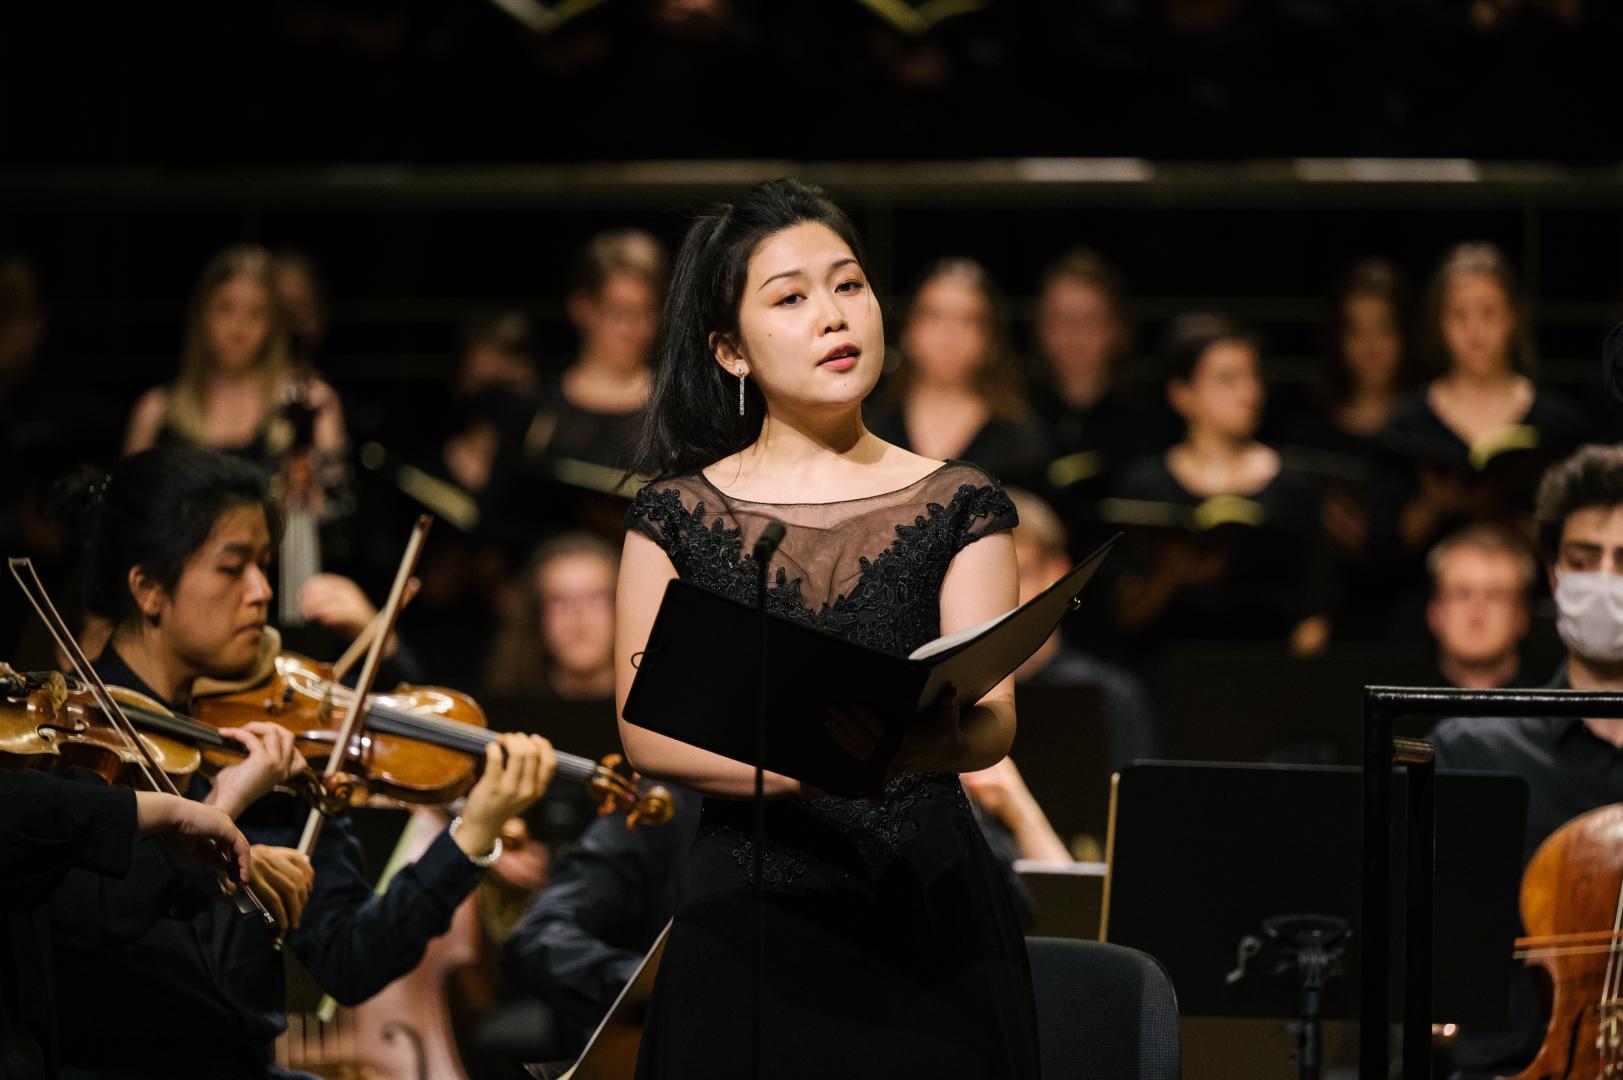 Solo-Sängerin in schwarzem Kleid mit dem HfMDK-Orchester auf der Bühne im Großen Saal